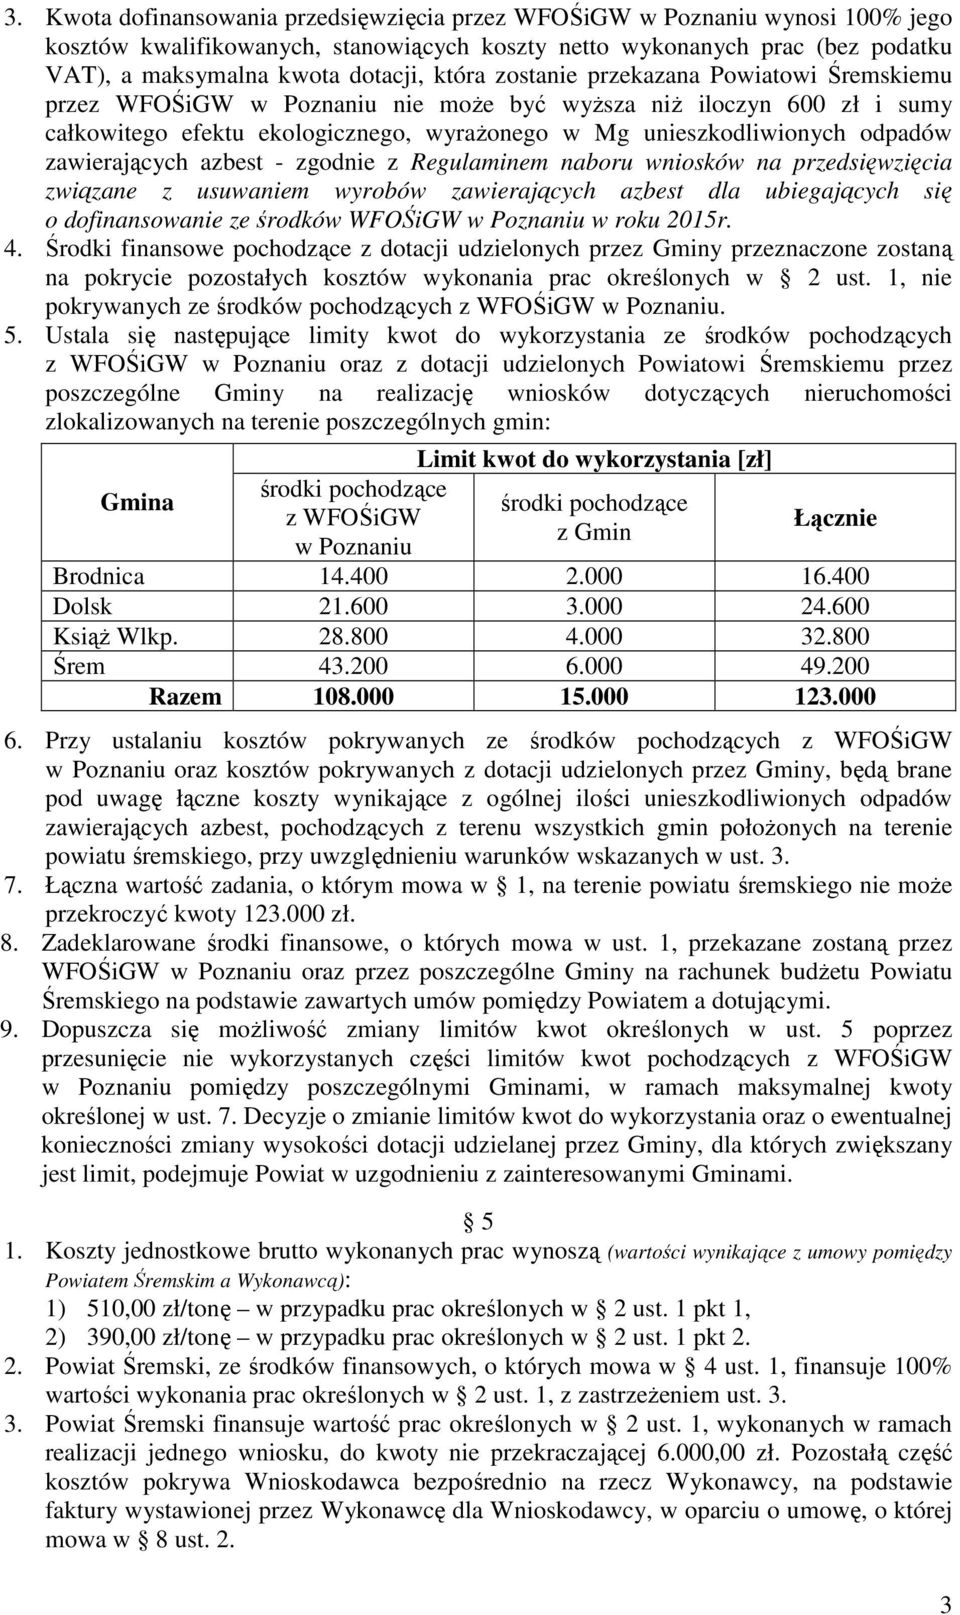 zawierających azbest - zgodnie z Regulaminem naboru wniosków na przedsięwzięcia związane z usuwaniem wyrobów zawierających azbest dla ubiegających się o dofinansowanie ze środków WFOŚiGW w Poznaniu w